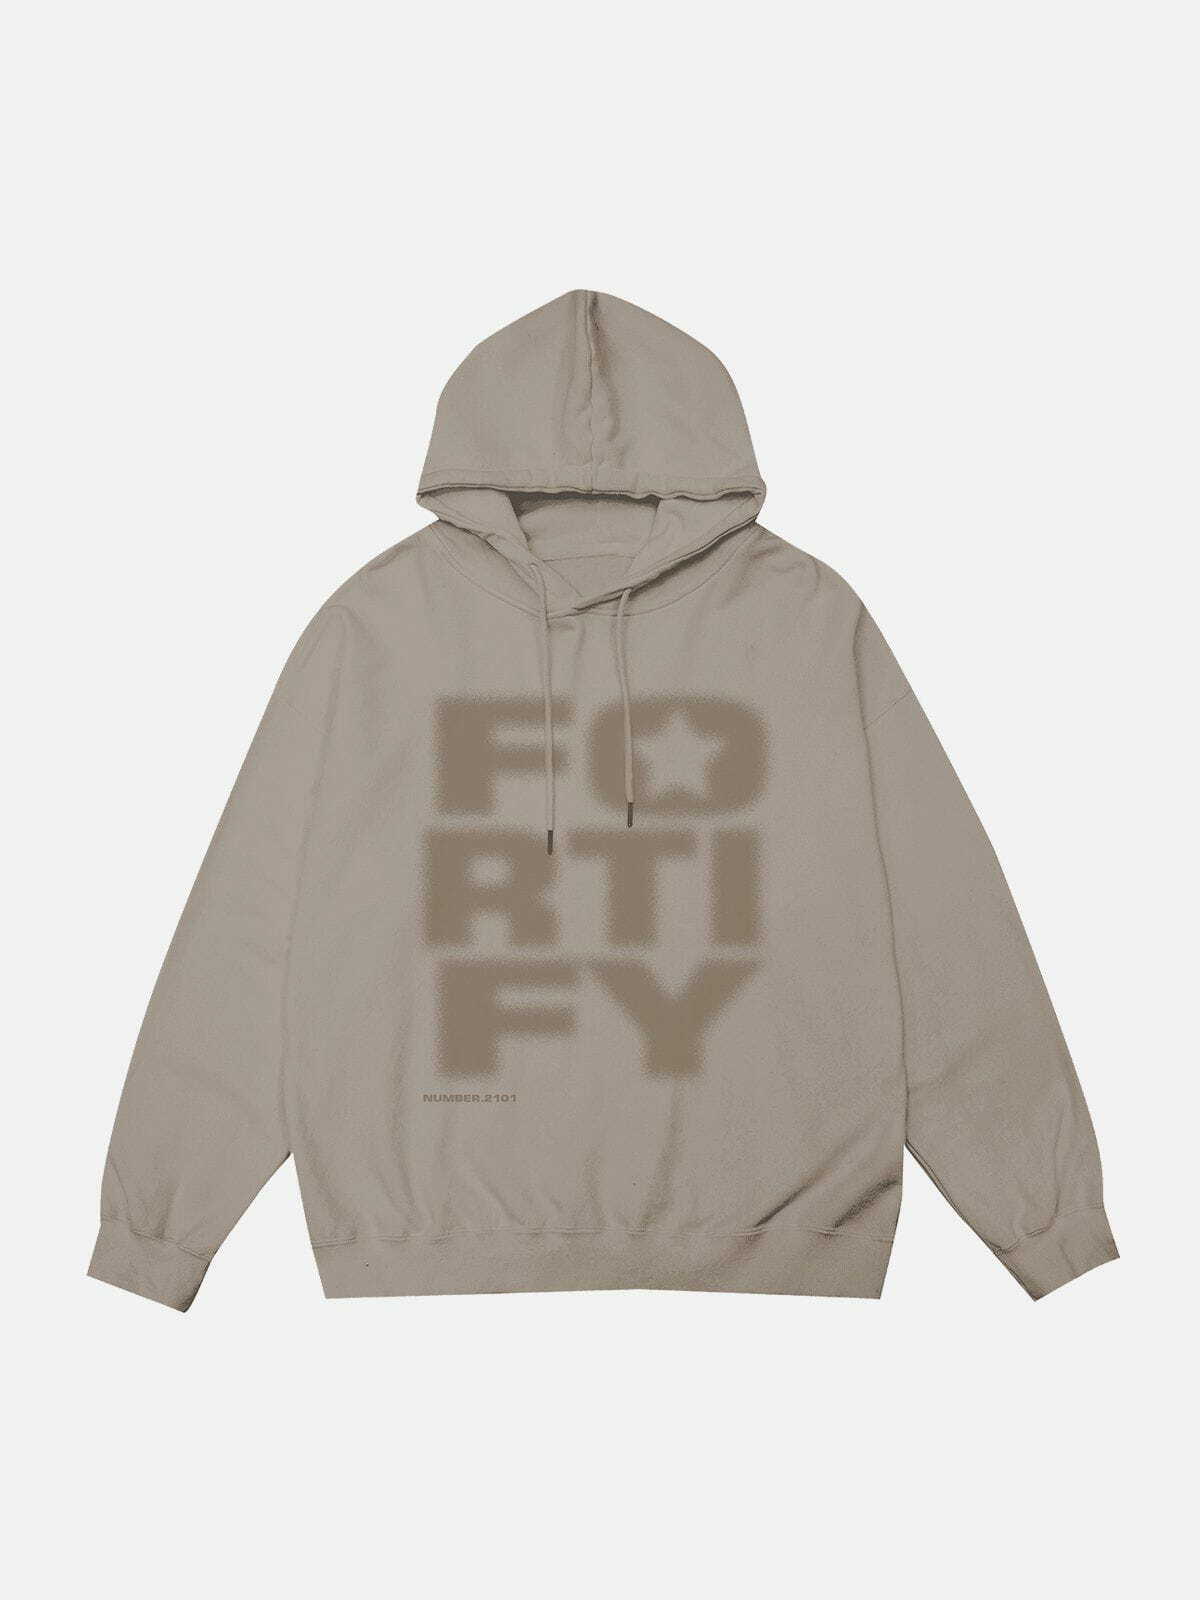 fortify' hoodie edgy & dynamic streetwear 1834